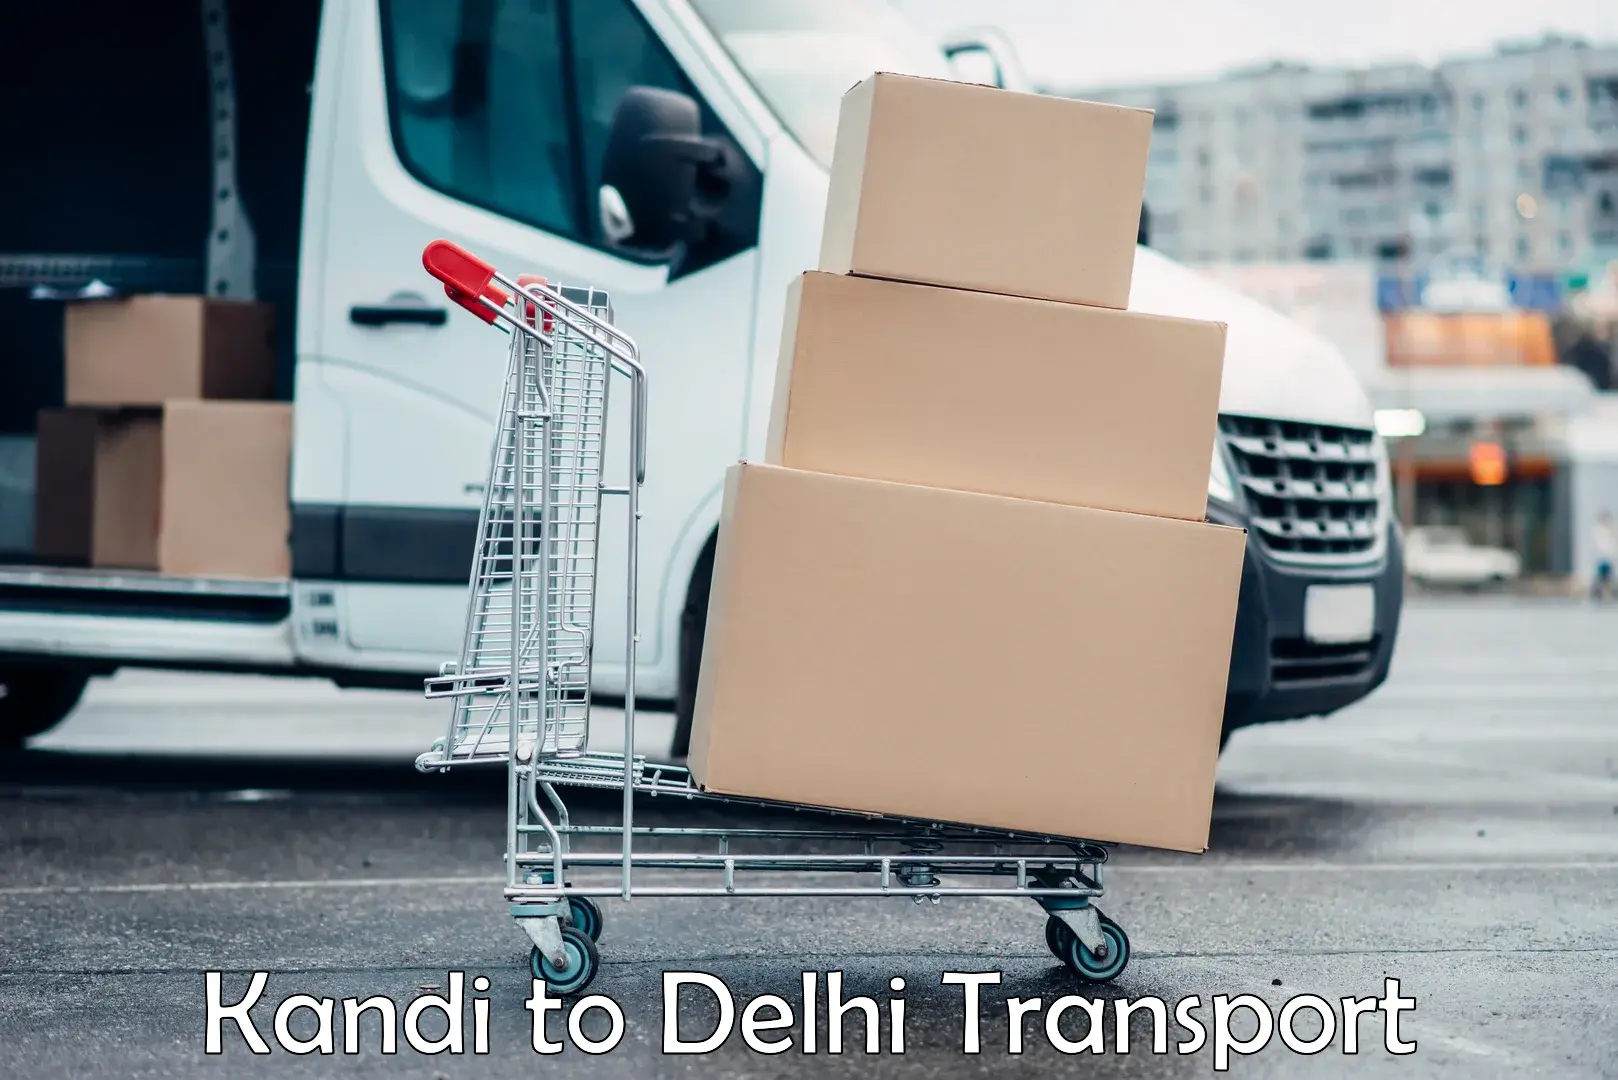 Bike transport service Kandi to Delhi